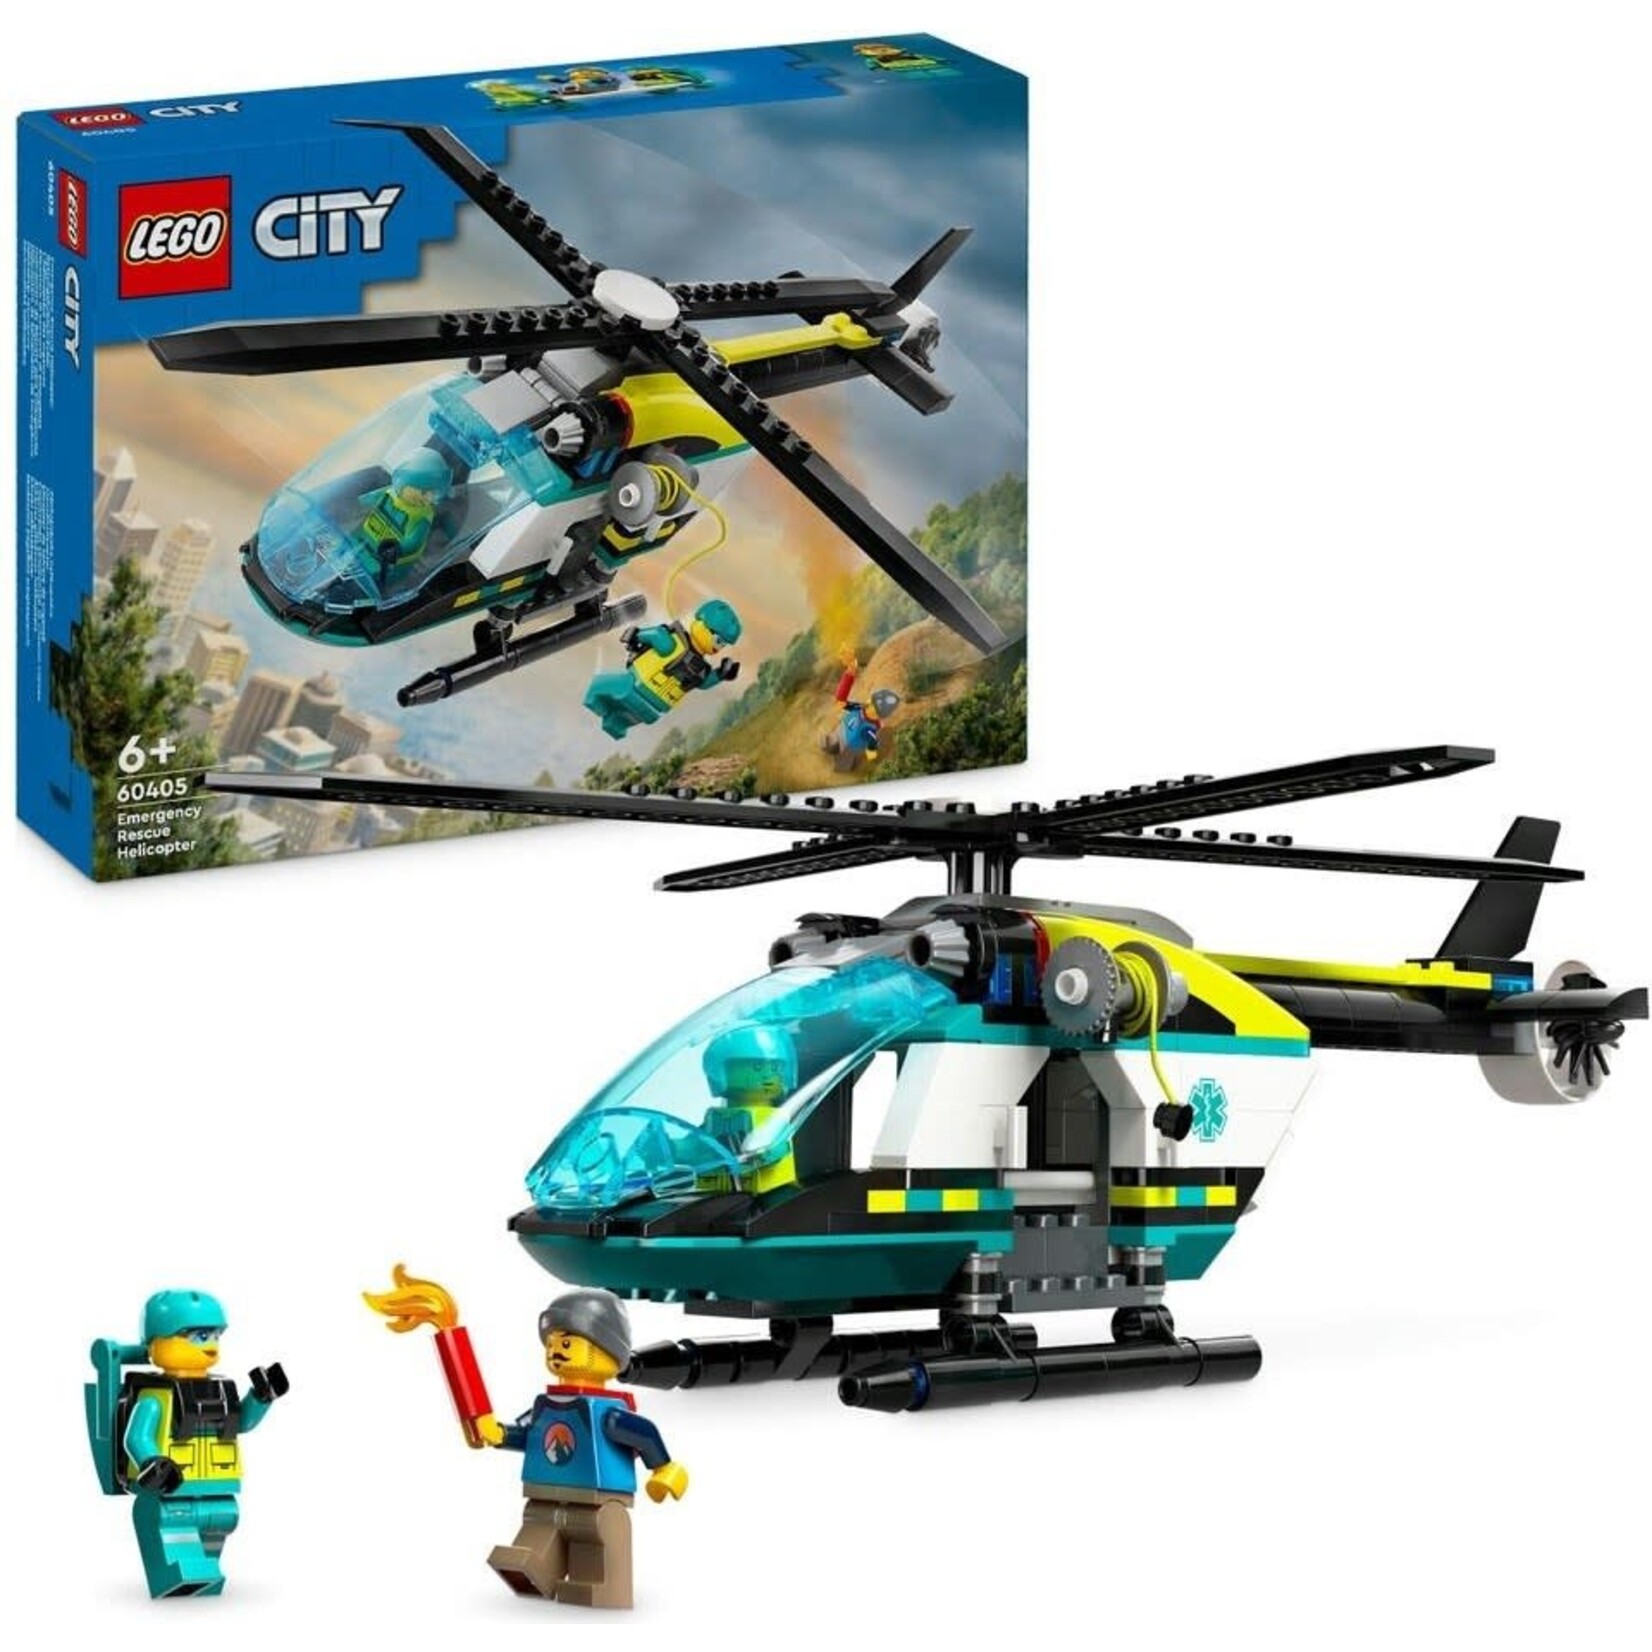 LEGO Reddingshelikopter - 60405